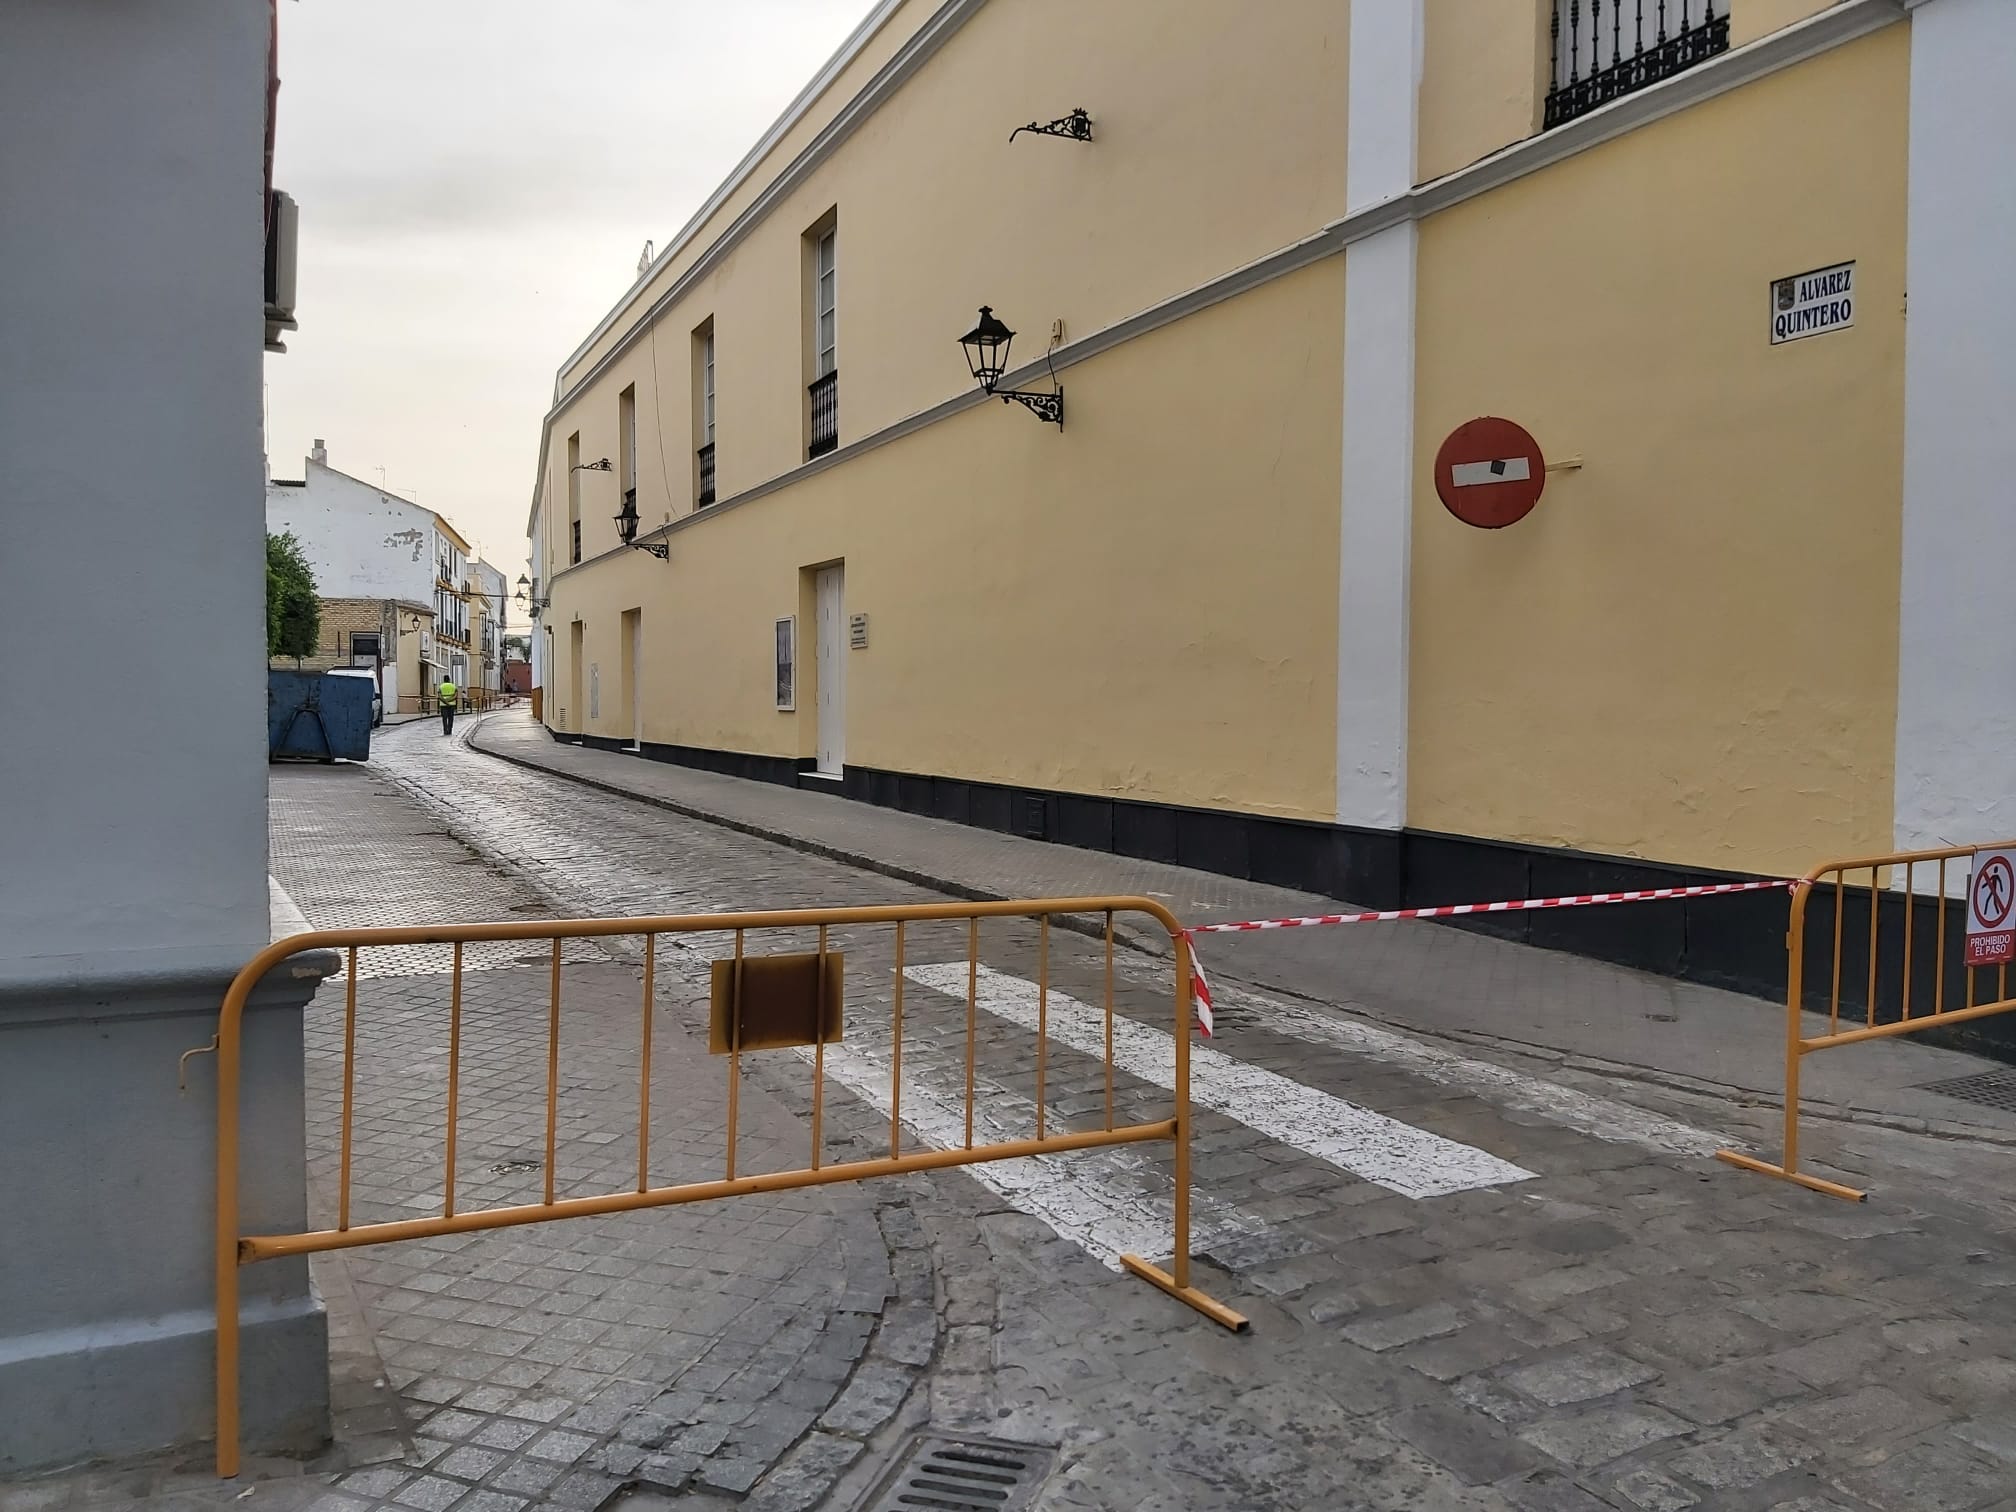 La calle Álvarez Quintero permanecerá cerrada por obra este viernes 20 de mayo